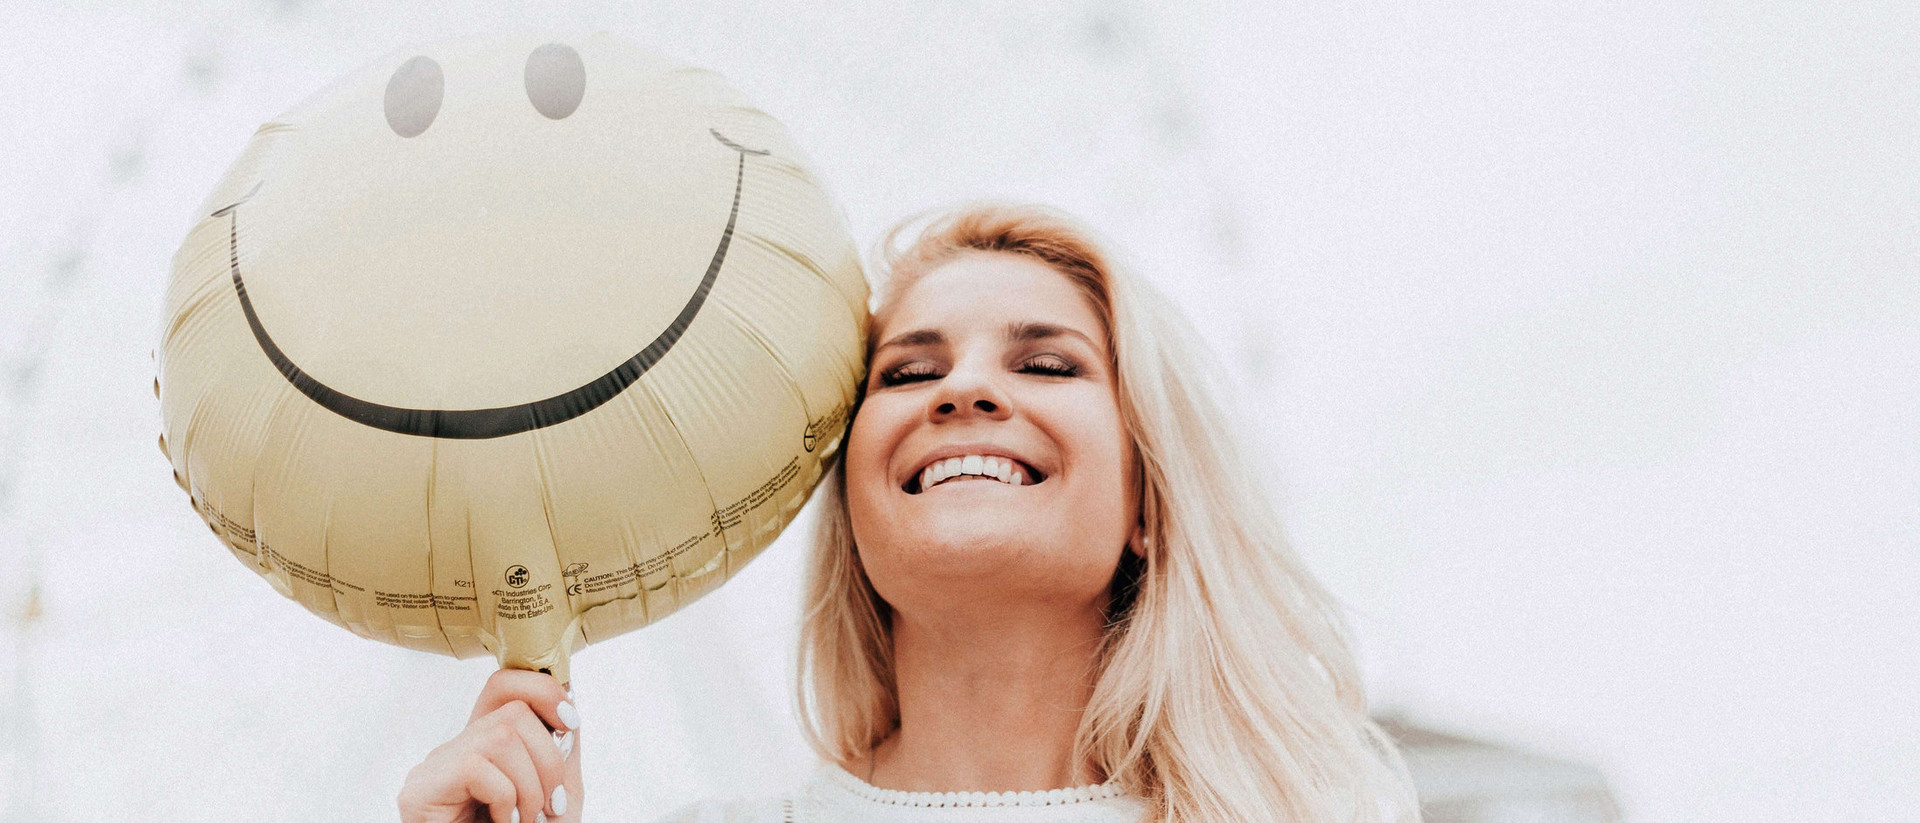 Eine blonde Frau lacht mit geschlossen Augen. Zu ihrer Linken, direkt neben ihrem Gesicht, ist ein Luftballon zu sehen, auf dem ein lachendes Gesicht zu sehen ist.